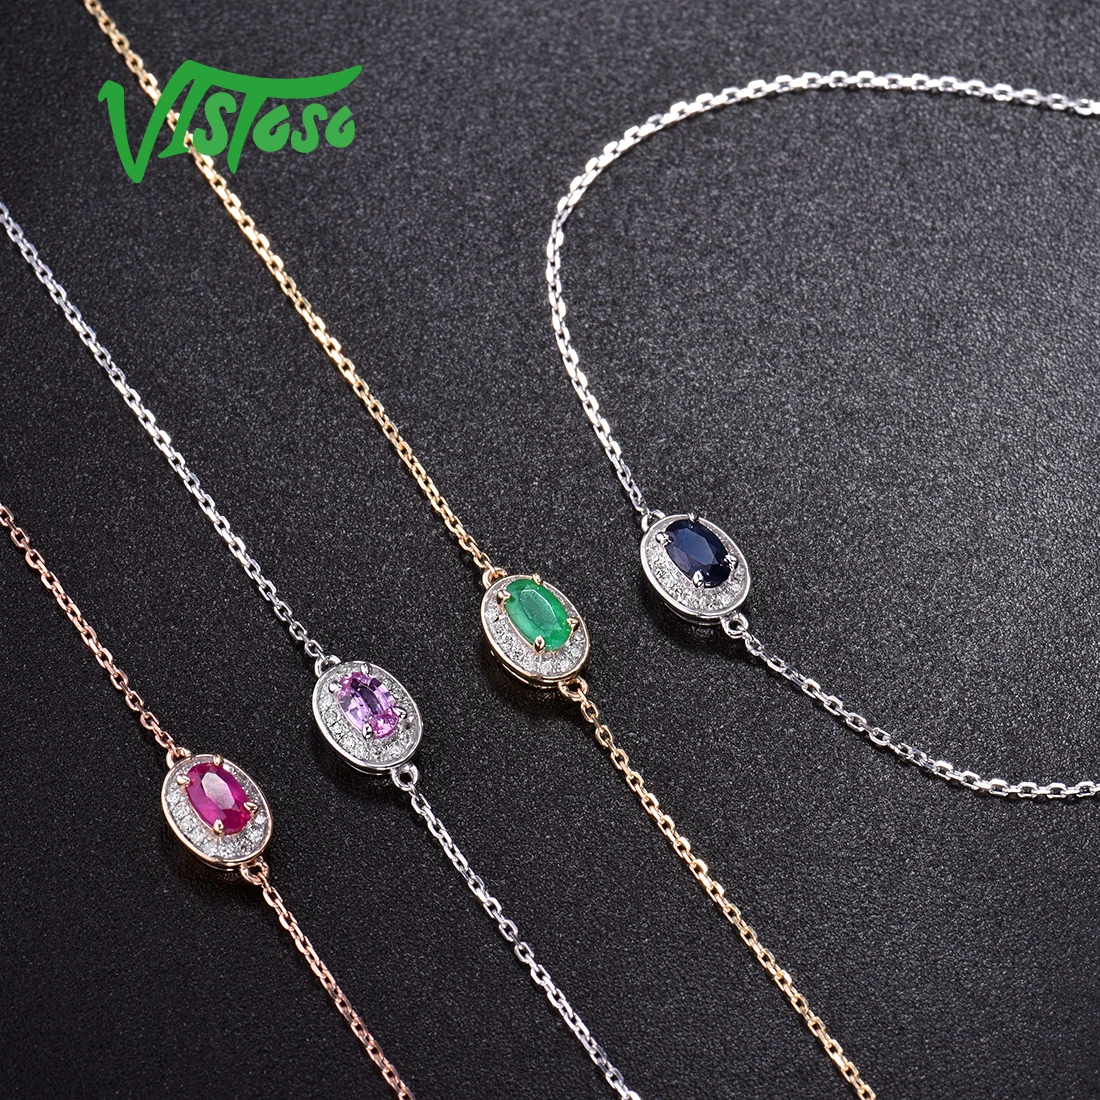 VISTOSO 14 K W/Y/R золотые браслеты для женщин Необычные розовый/синий сапфир/Изумруд/рубиновый Блестящий бриллиантовый браслет юбилей ювелирные изделия